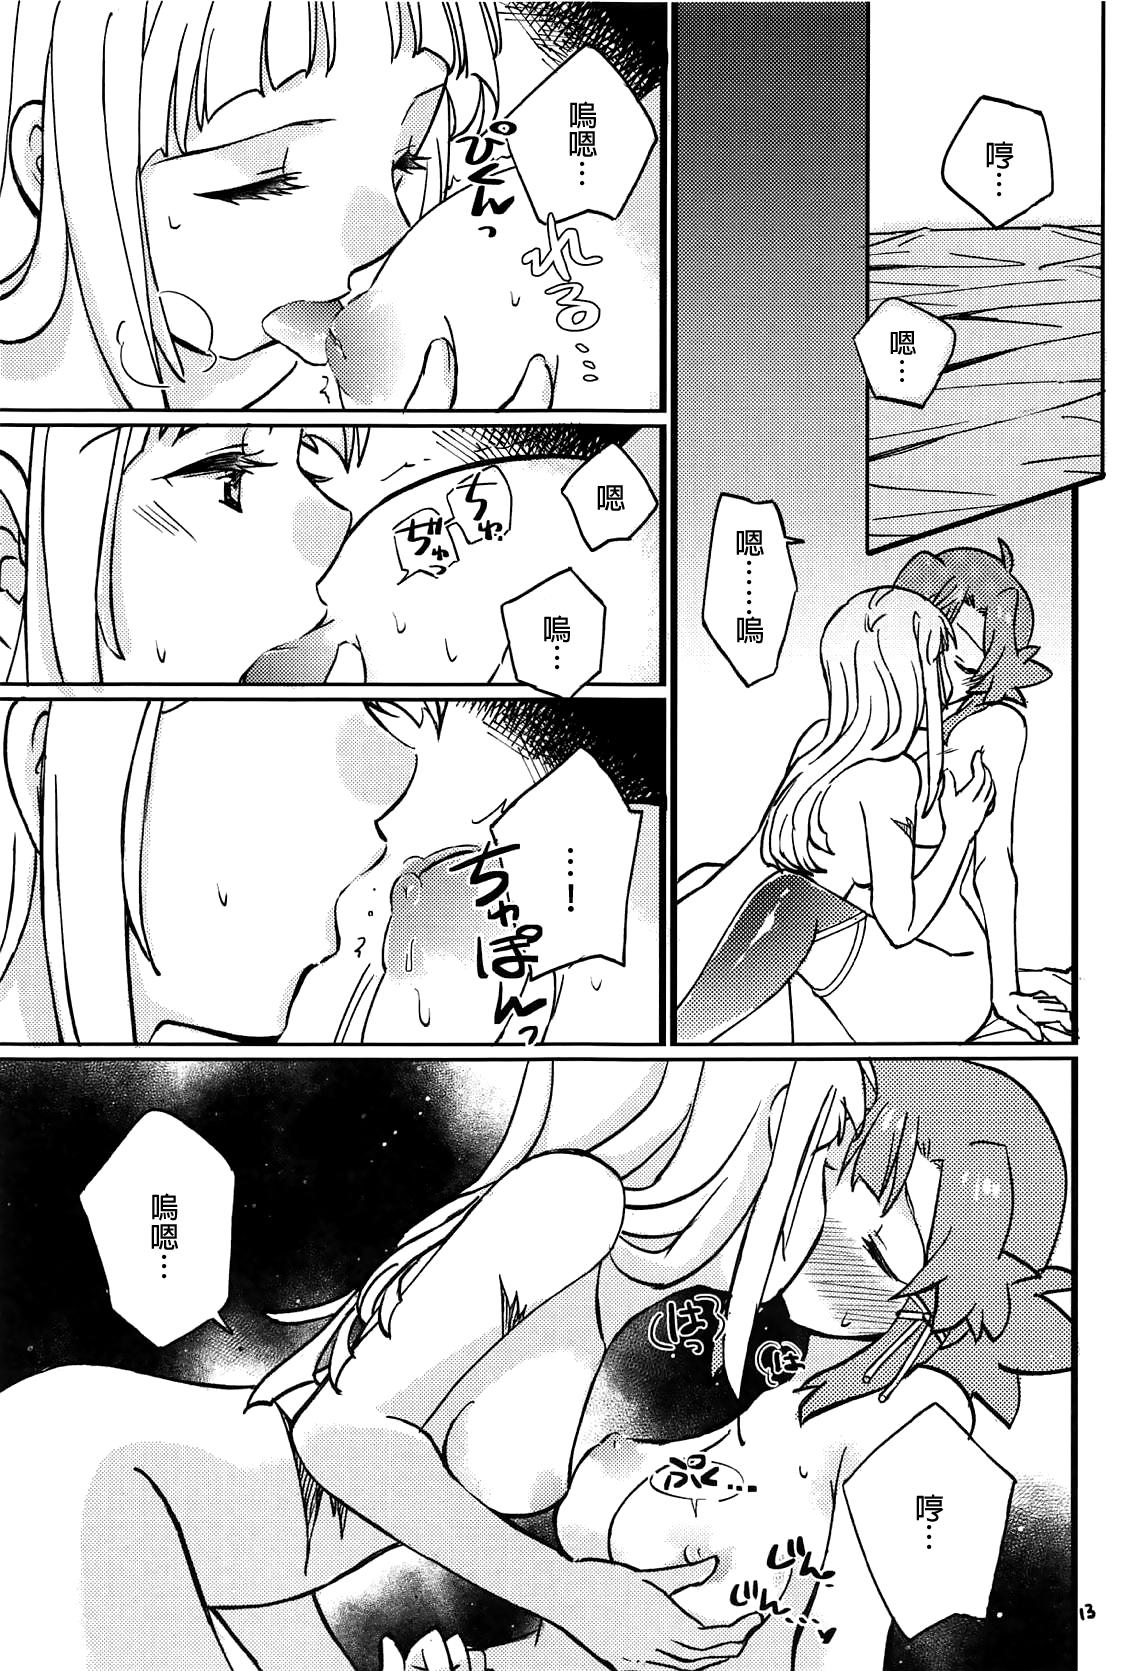 Sex Toy Adokenai Yoru no Futarigoto - Shuumatsu no izetta Bigbutt - Page 12